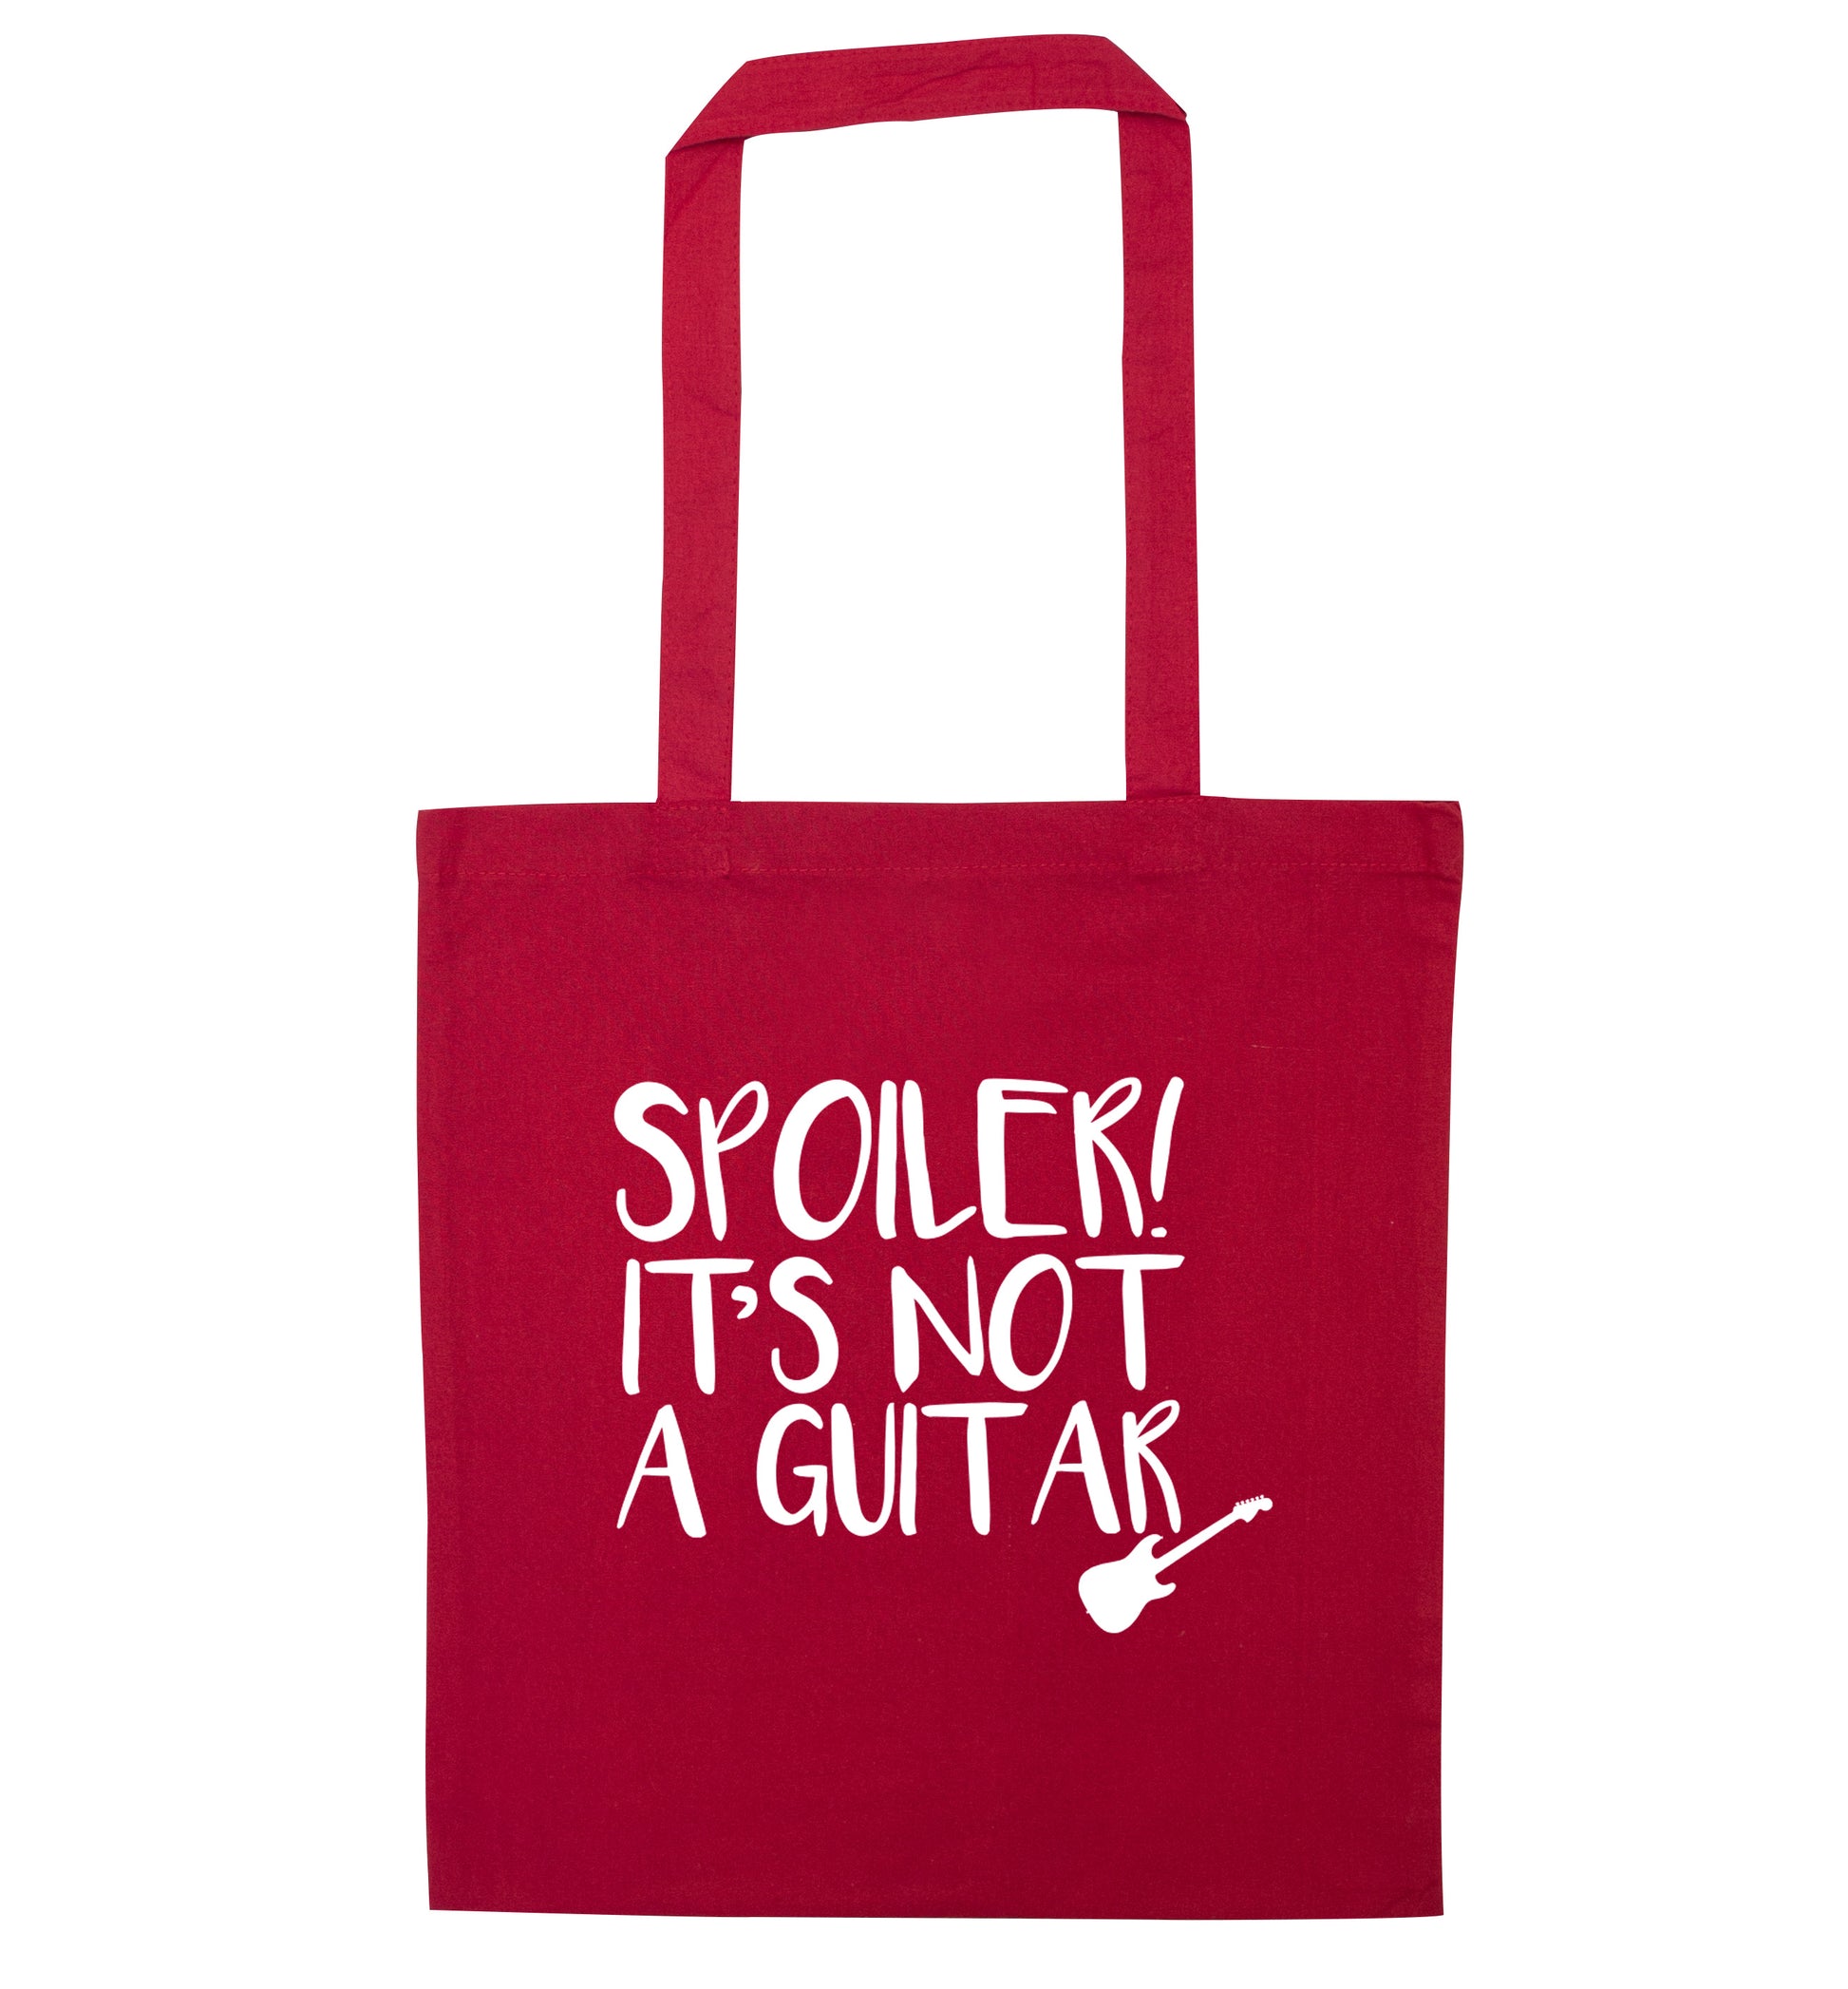 Spoiler it's not a guitar red tote bag